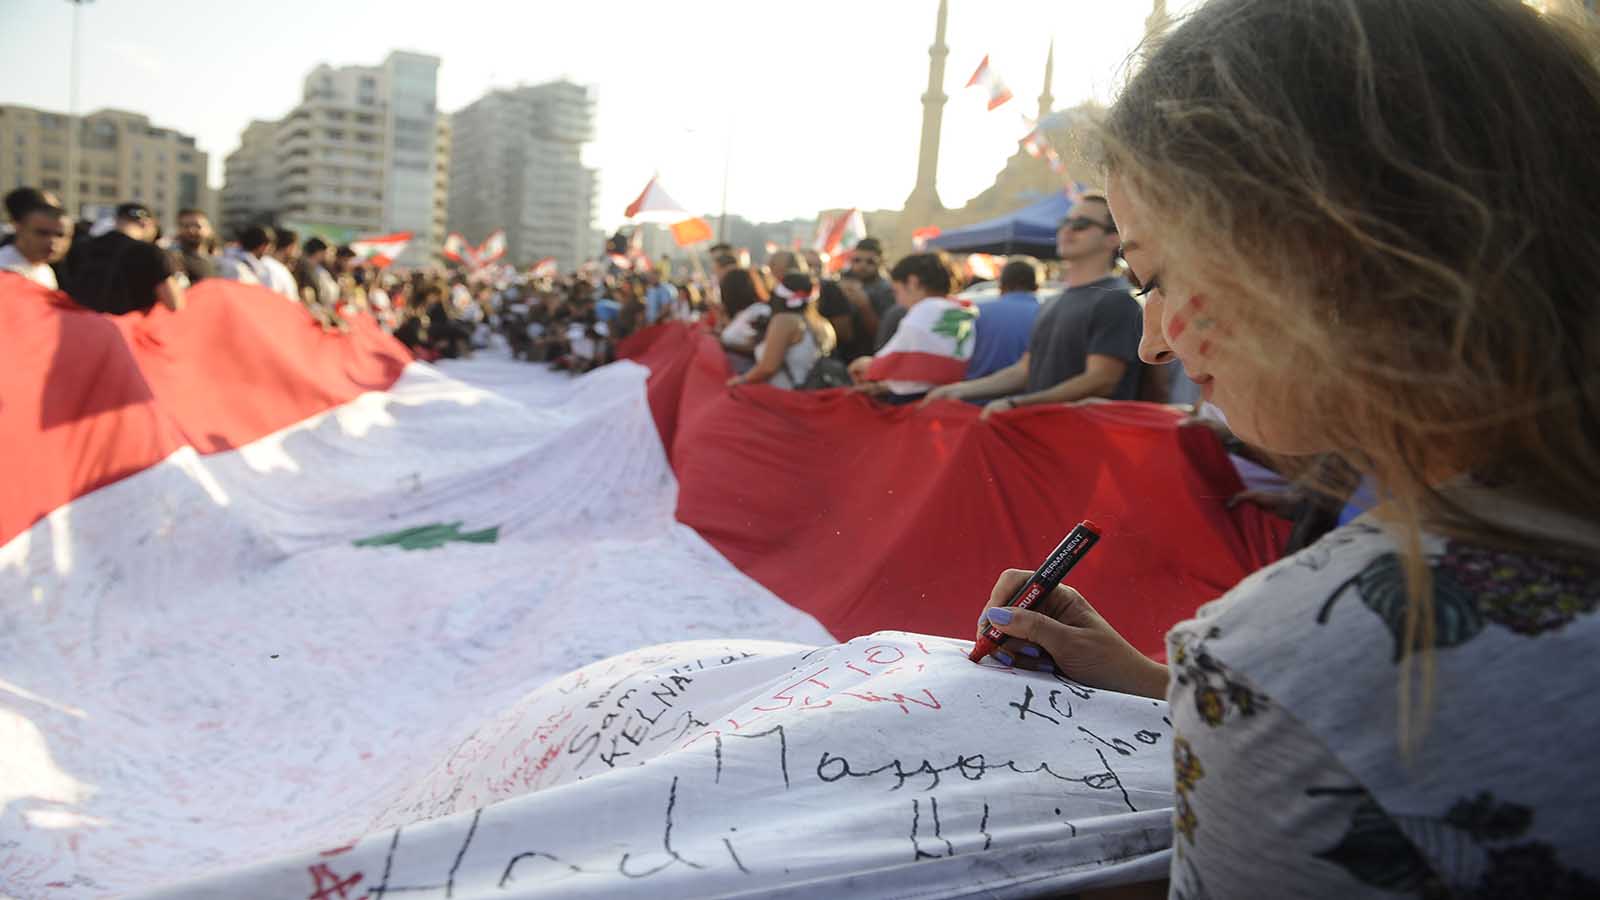 الصحافة الأجنبية: طفح كيل اللبنانيين والمشهد الطائفي انتهى